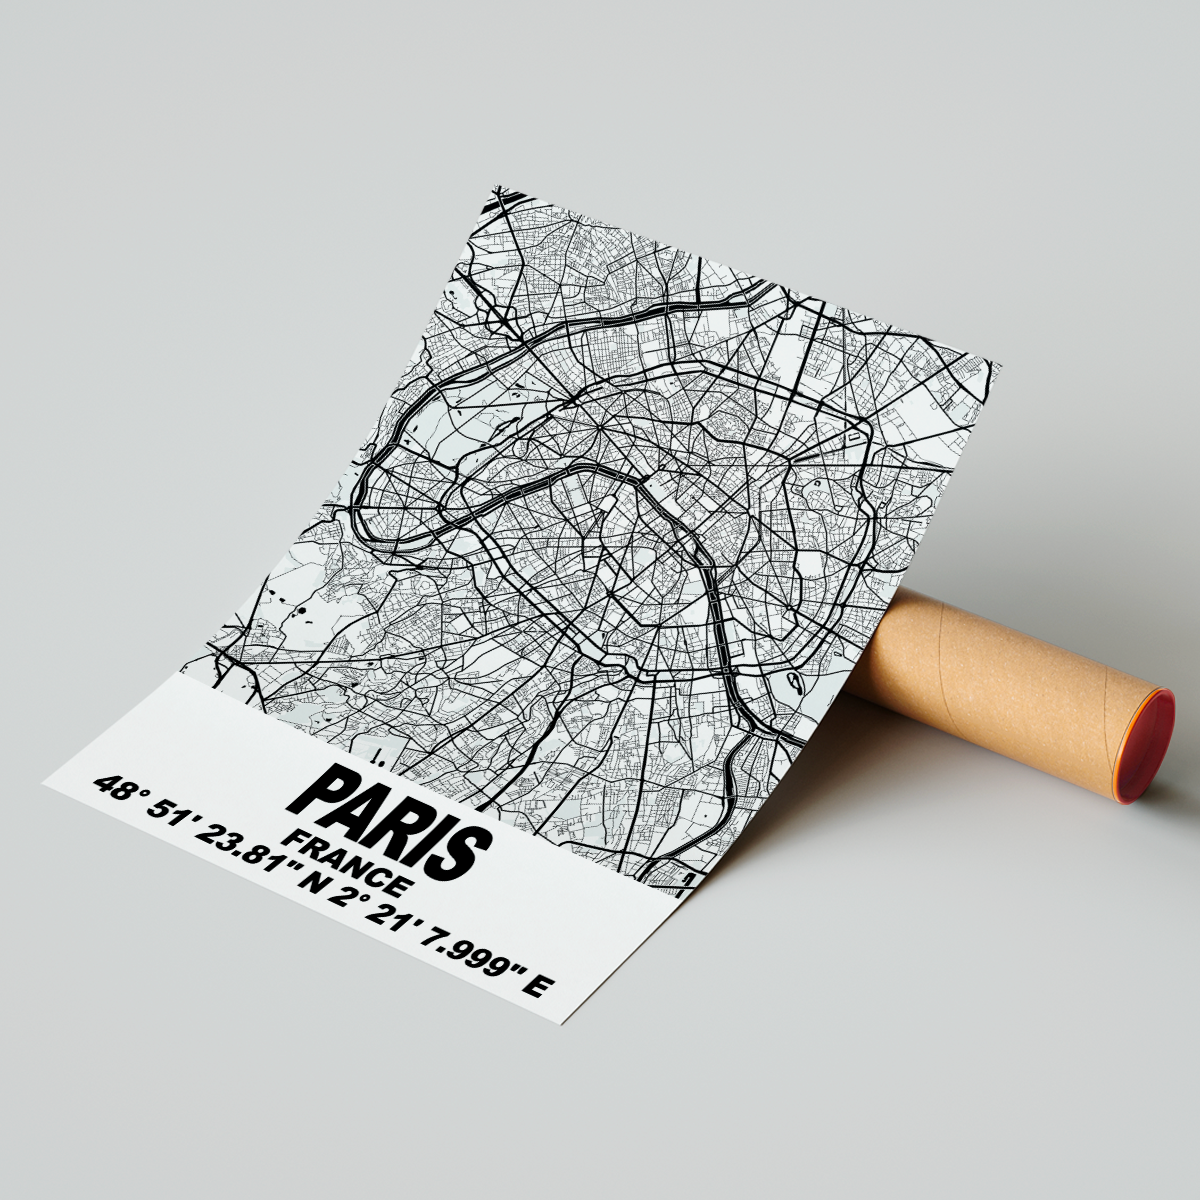 Affiche Carte Paris